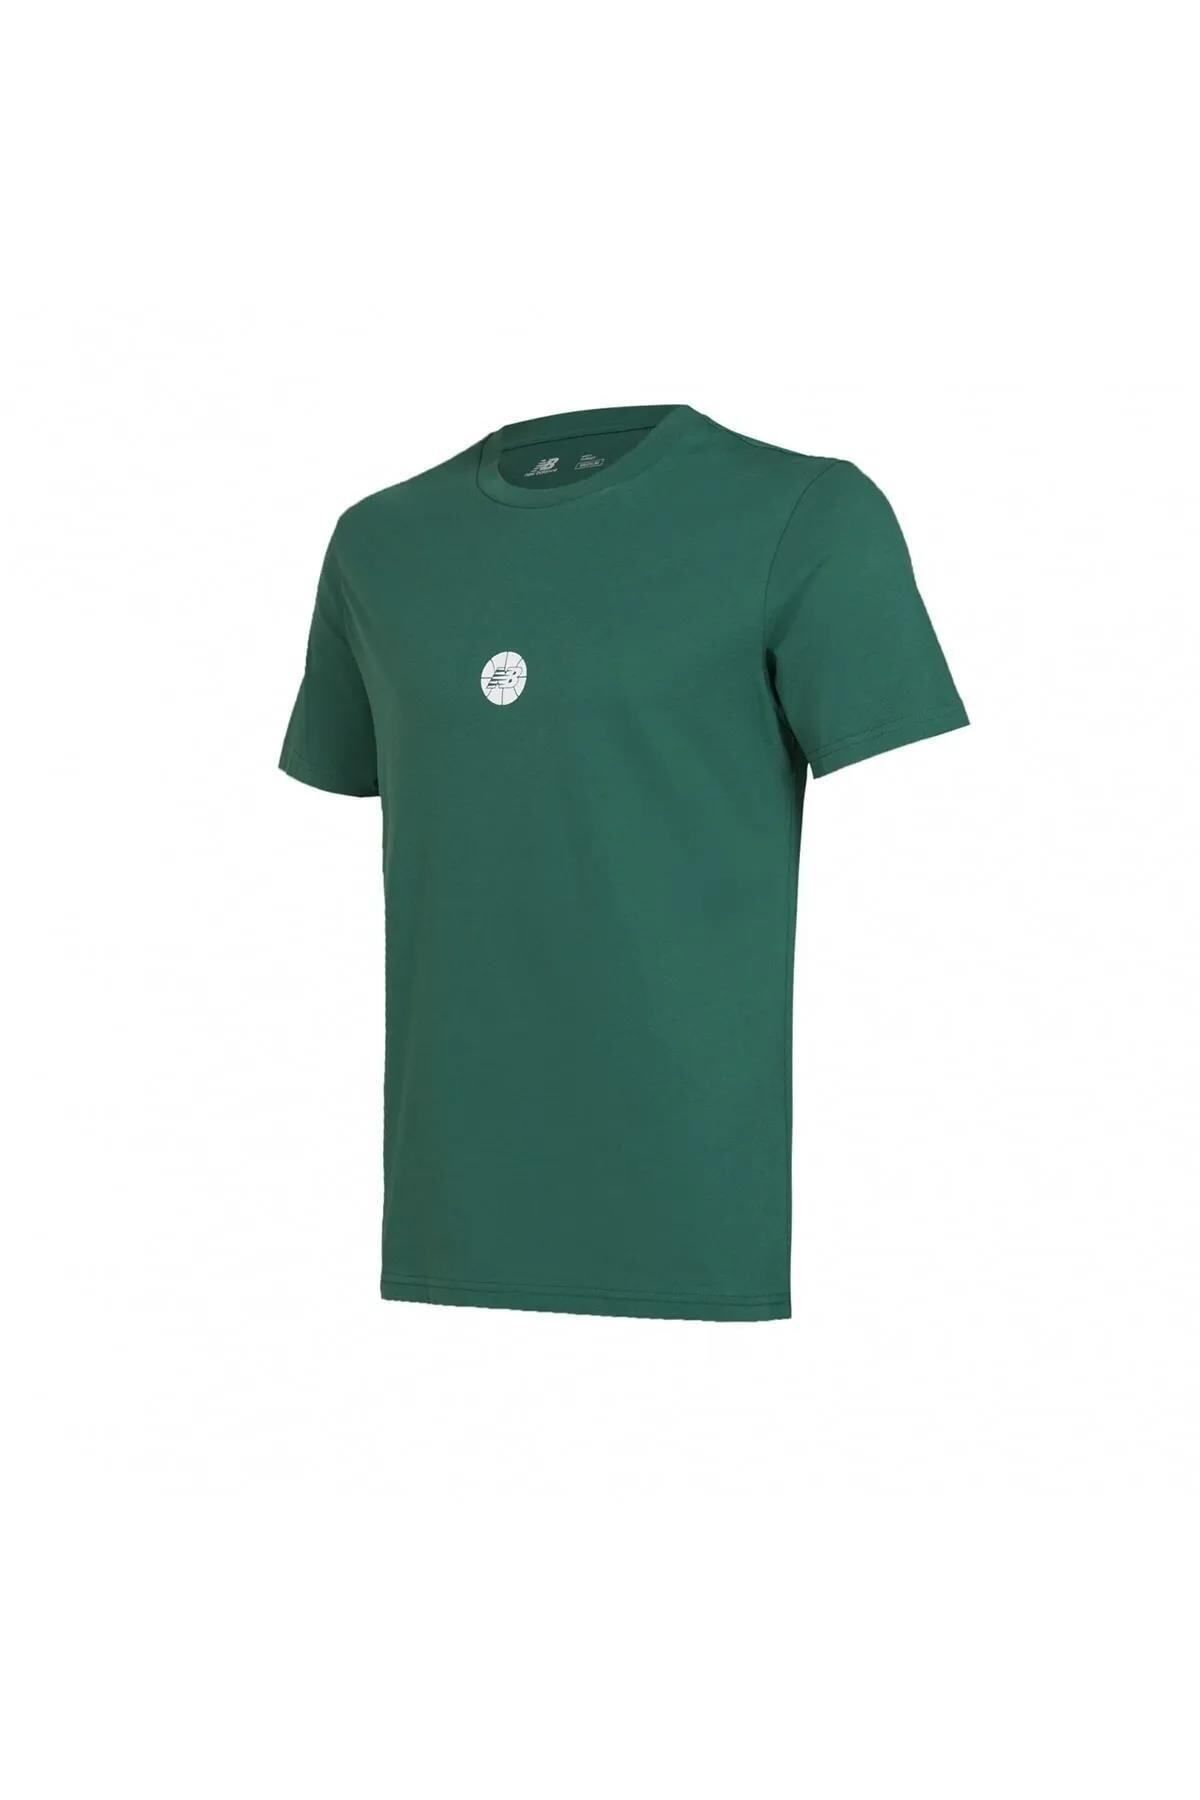 New Balance Mnt1343-grn Erkek T-shirt